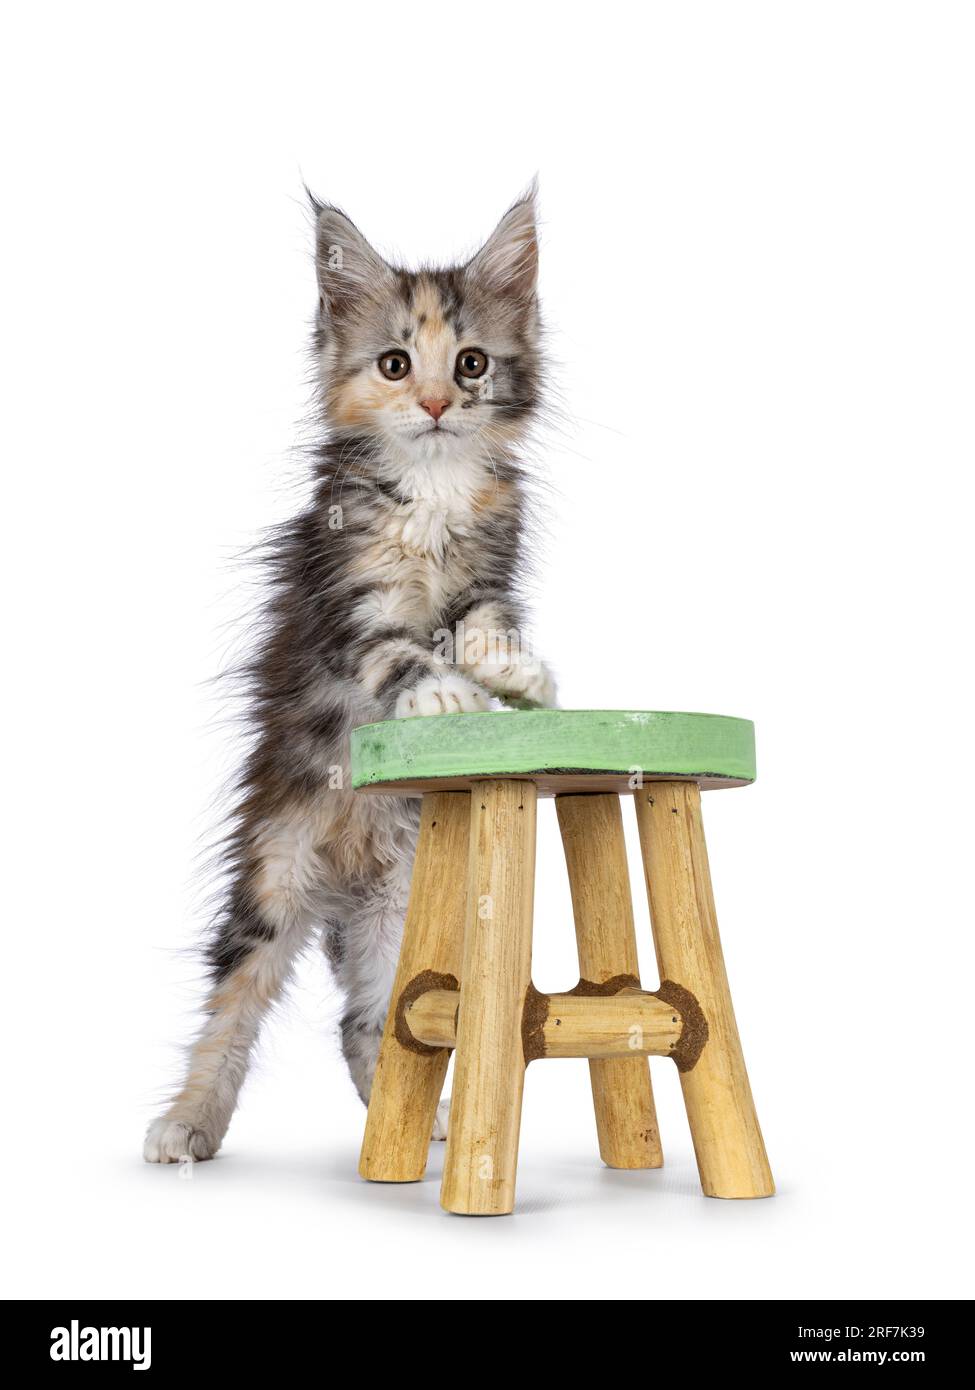 Adorable chat tortie mignon chaton, debout face à l'avant avec des pattes avant sur un petit tabouret en bois. Regarder vers la caméra. Isolé sur fond blanc. Banque D'Images